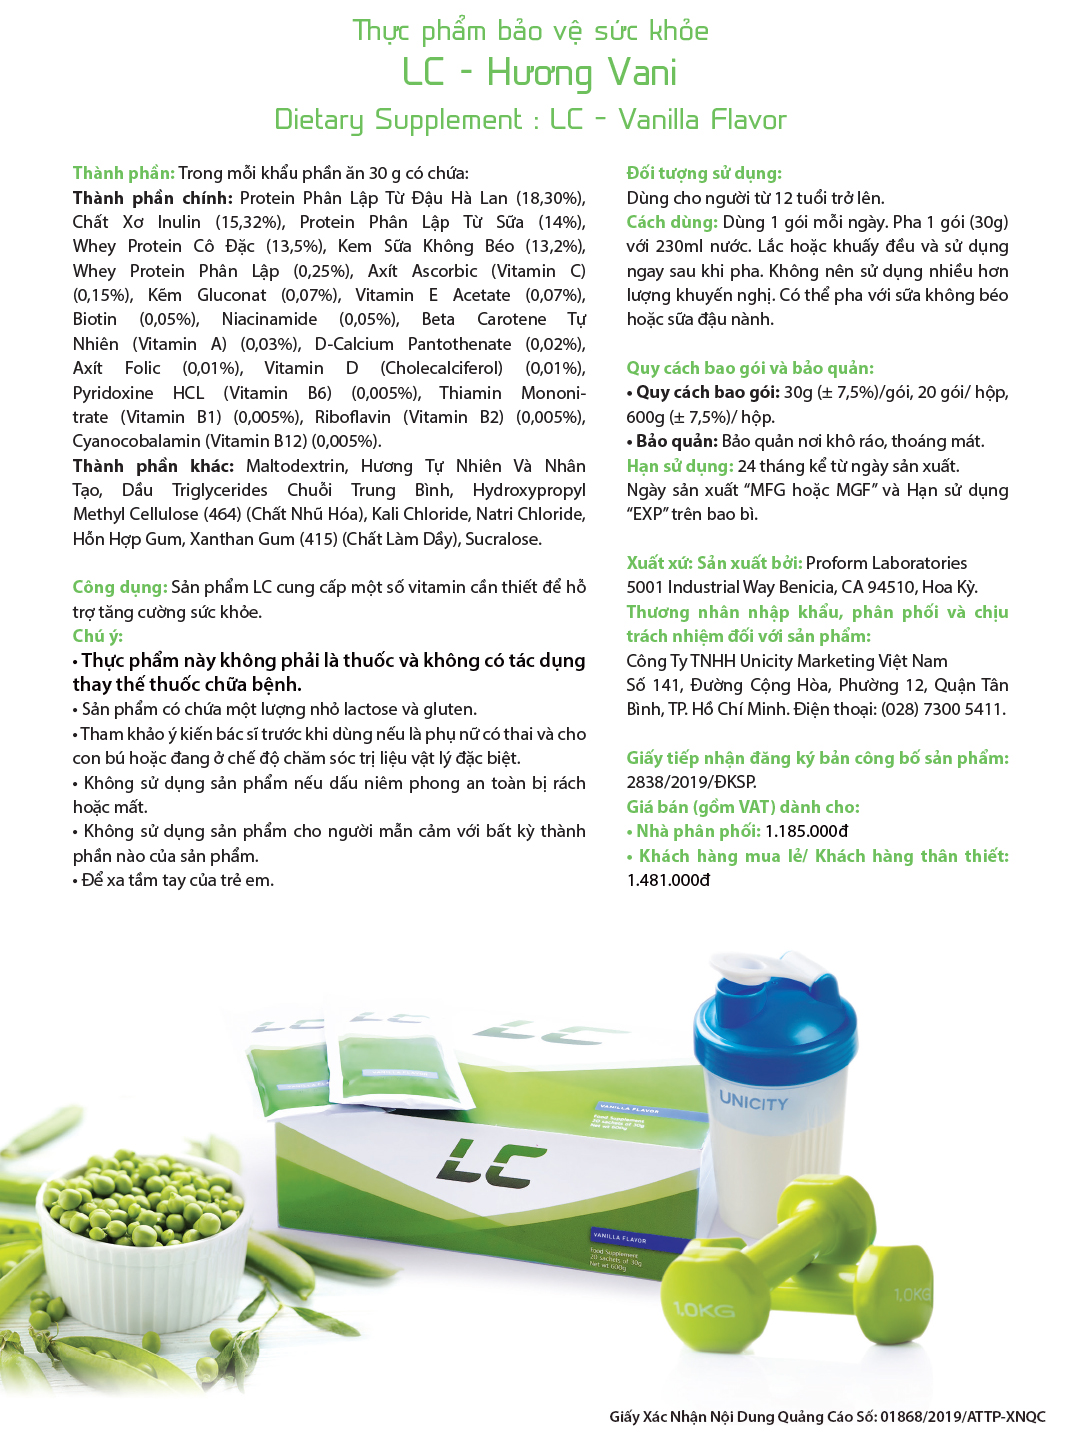 bộ sản phẩm chuyển hóa LC Unicity - Bữa ăn dinh dưỡng